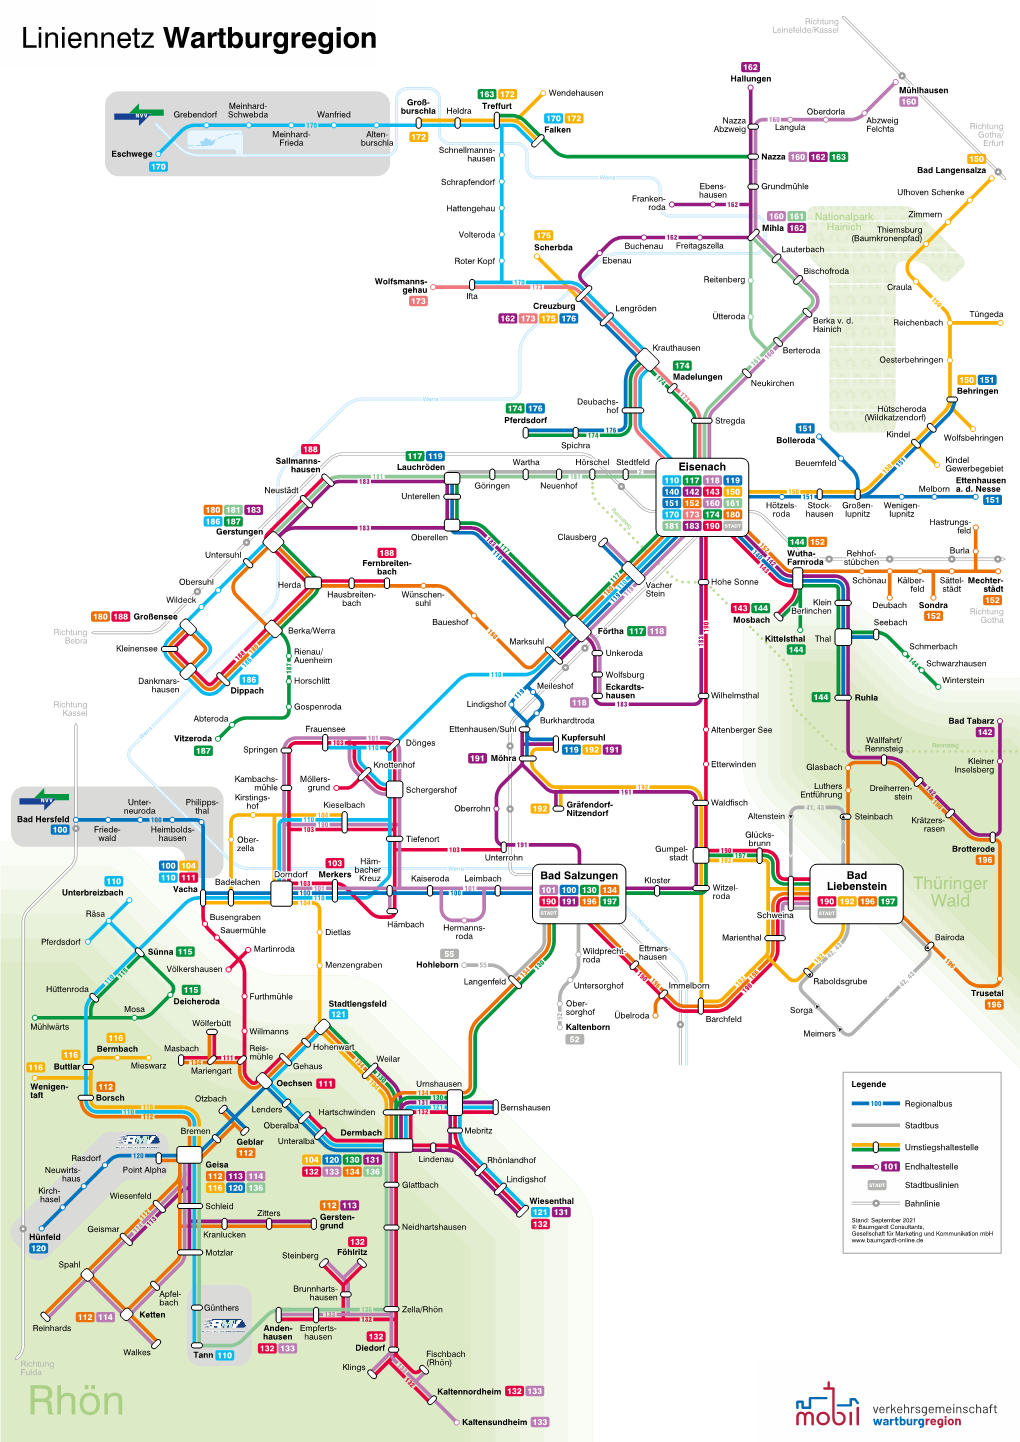 Liniennetz Wartburgregion Leinefelde/Kassel